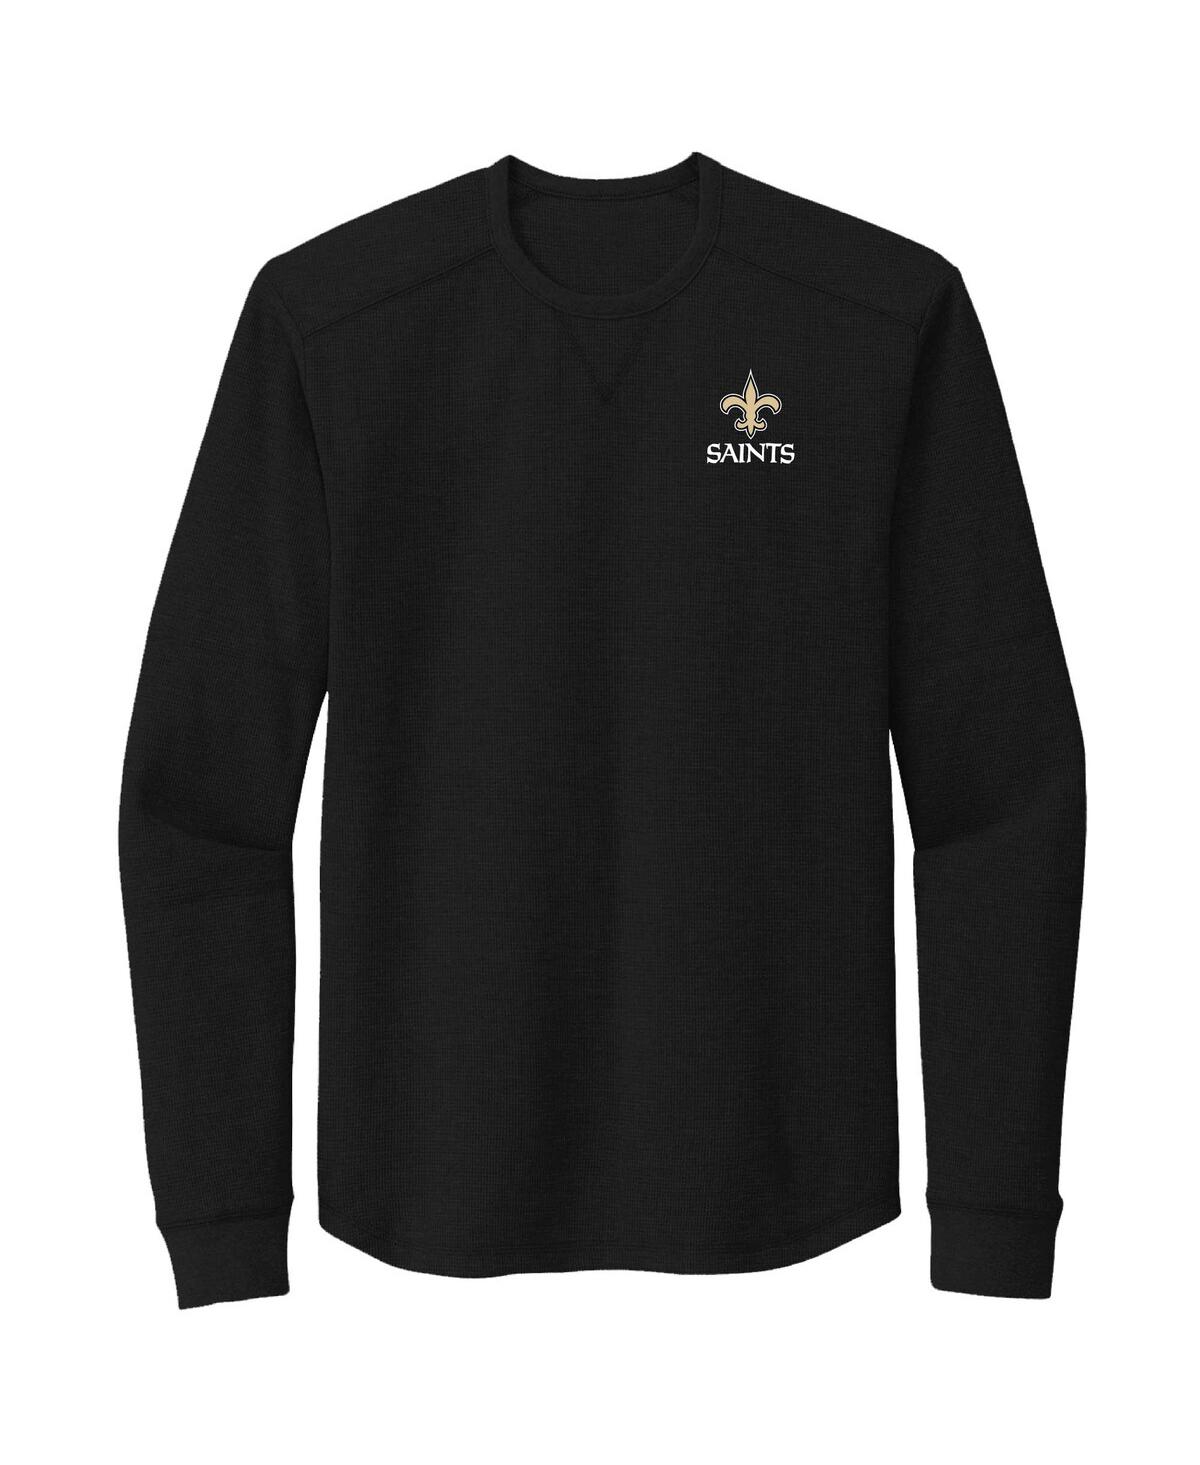 Shop Dunbrooke Men's  Black New Orleans Saints Cavalier Long Sleeve T-shirt